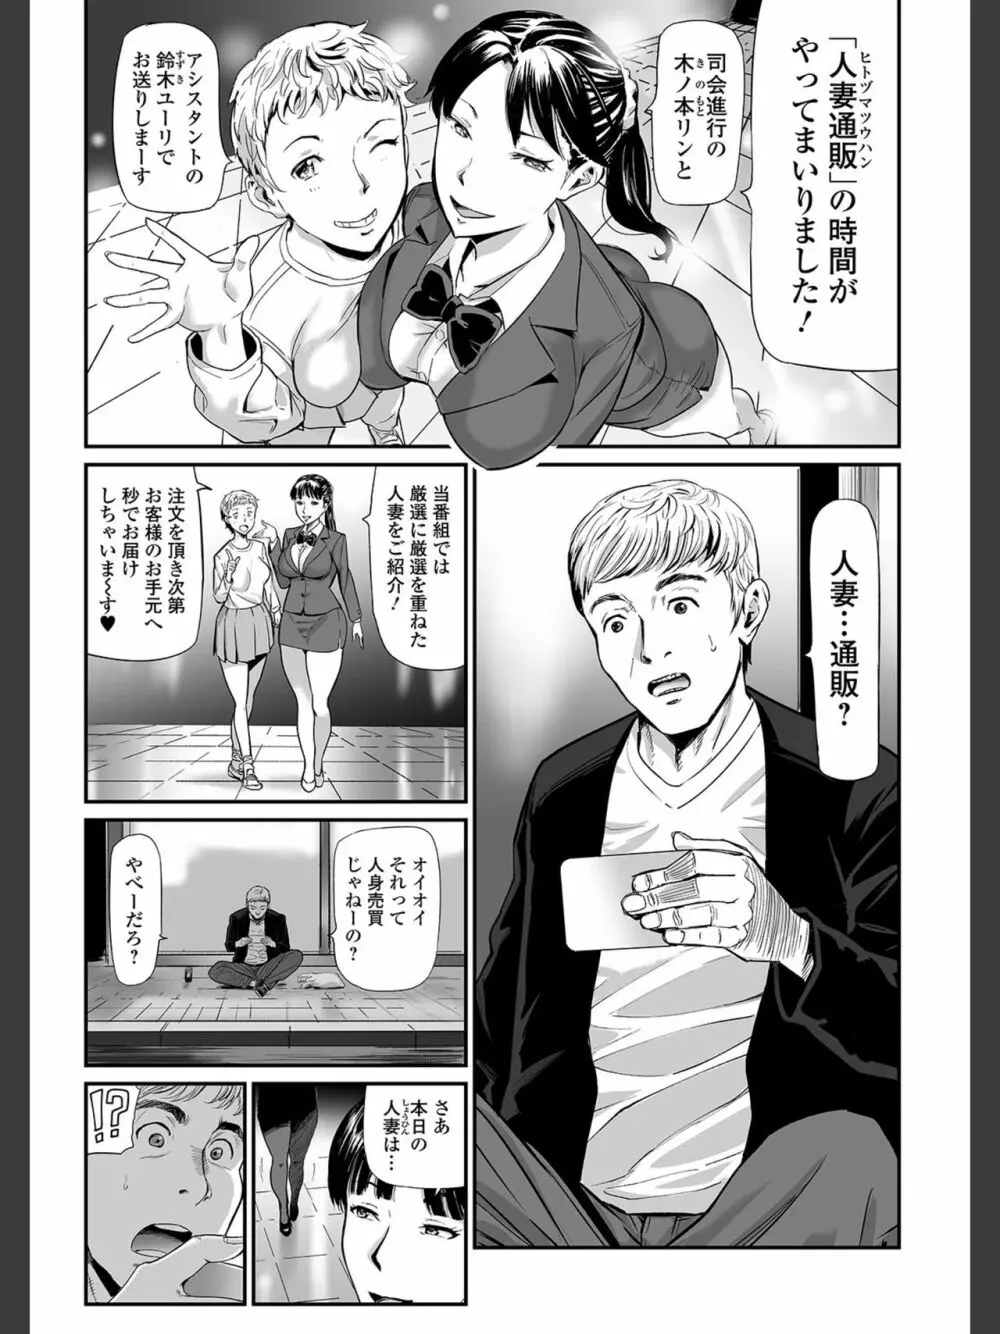 [山田タヒチ]人妻通販 -売られた女- 【FANZA特別版】 5ページ